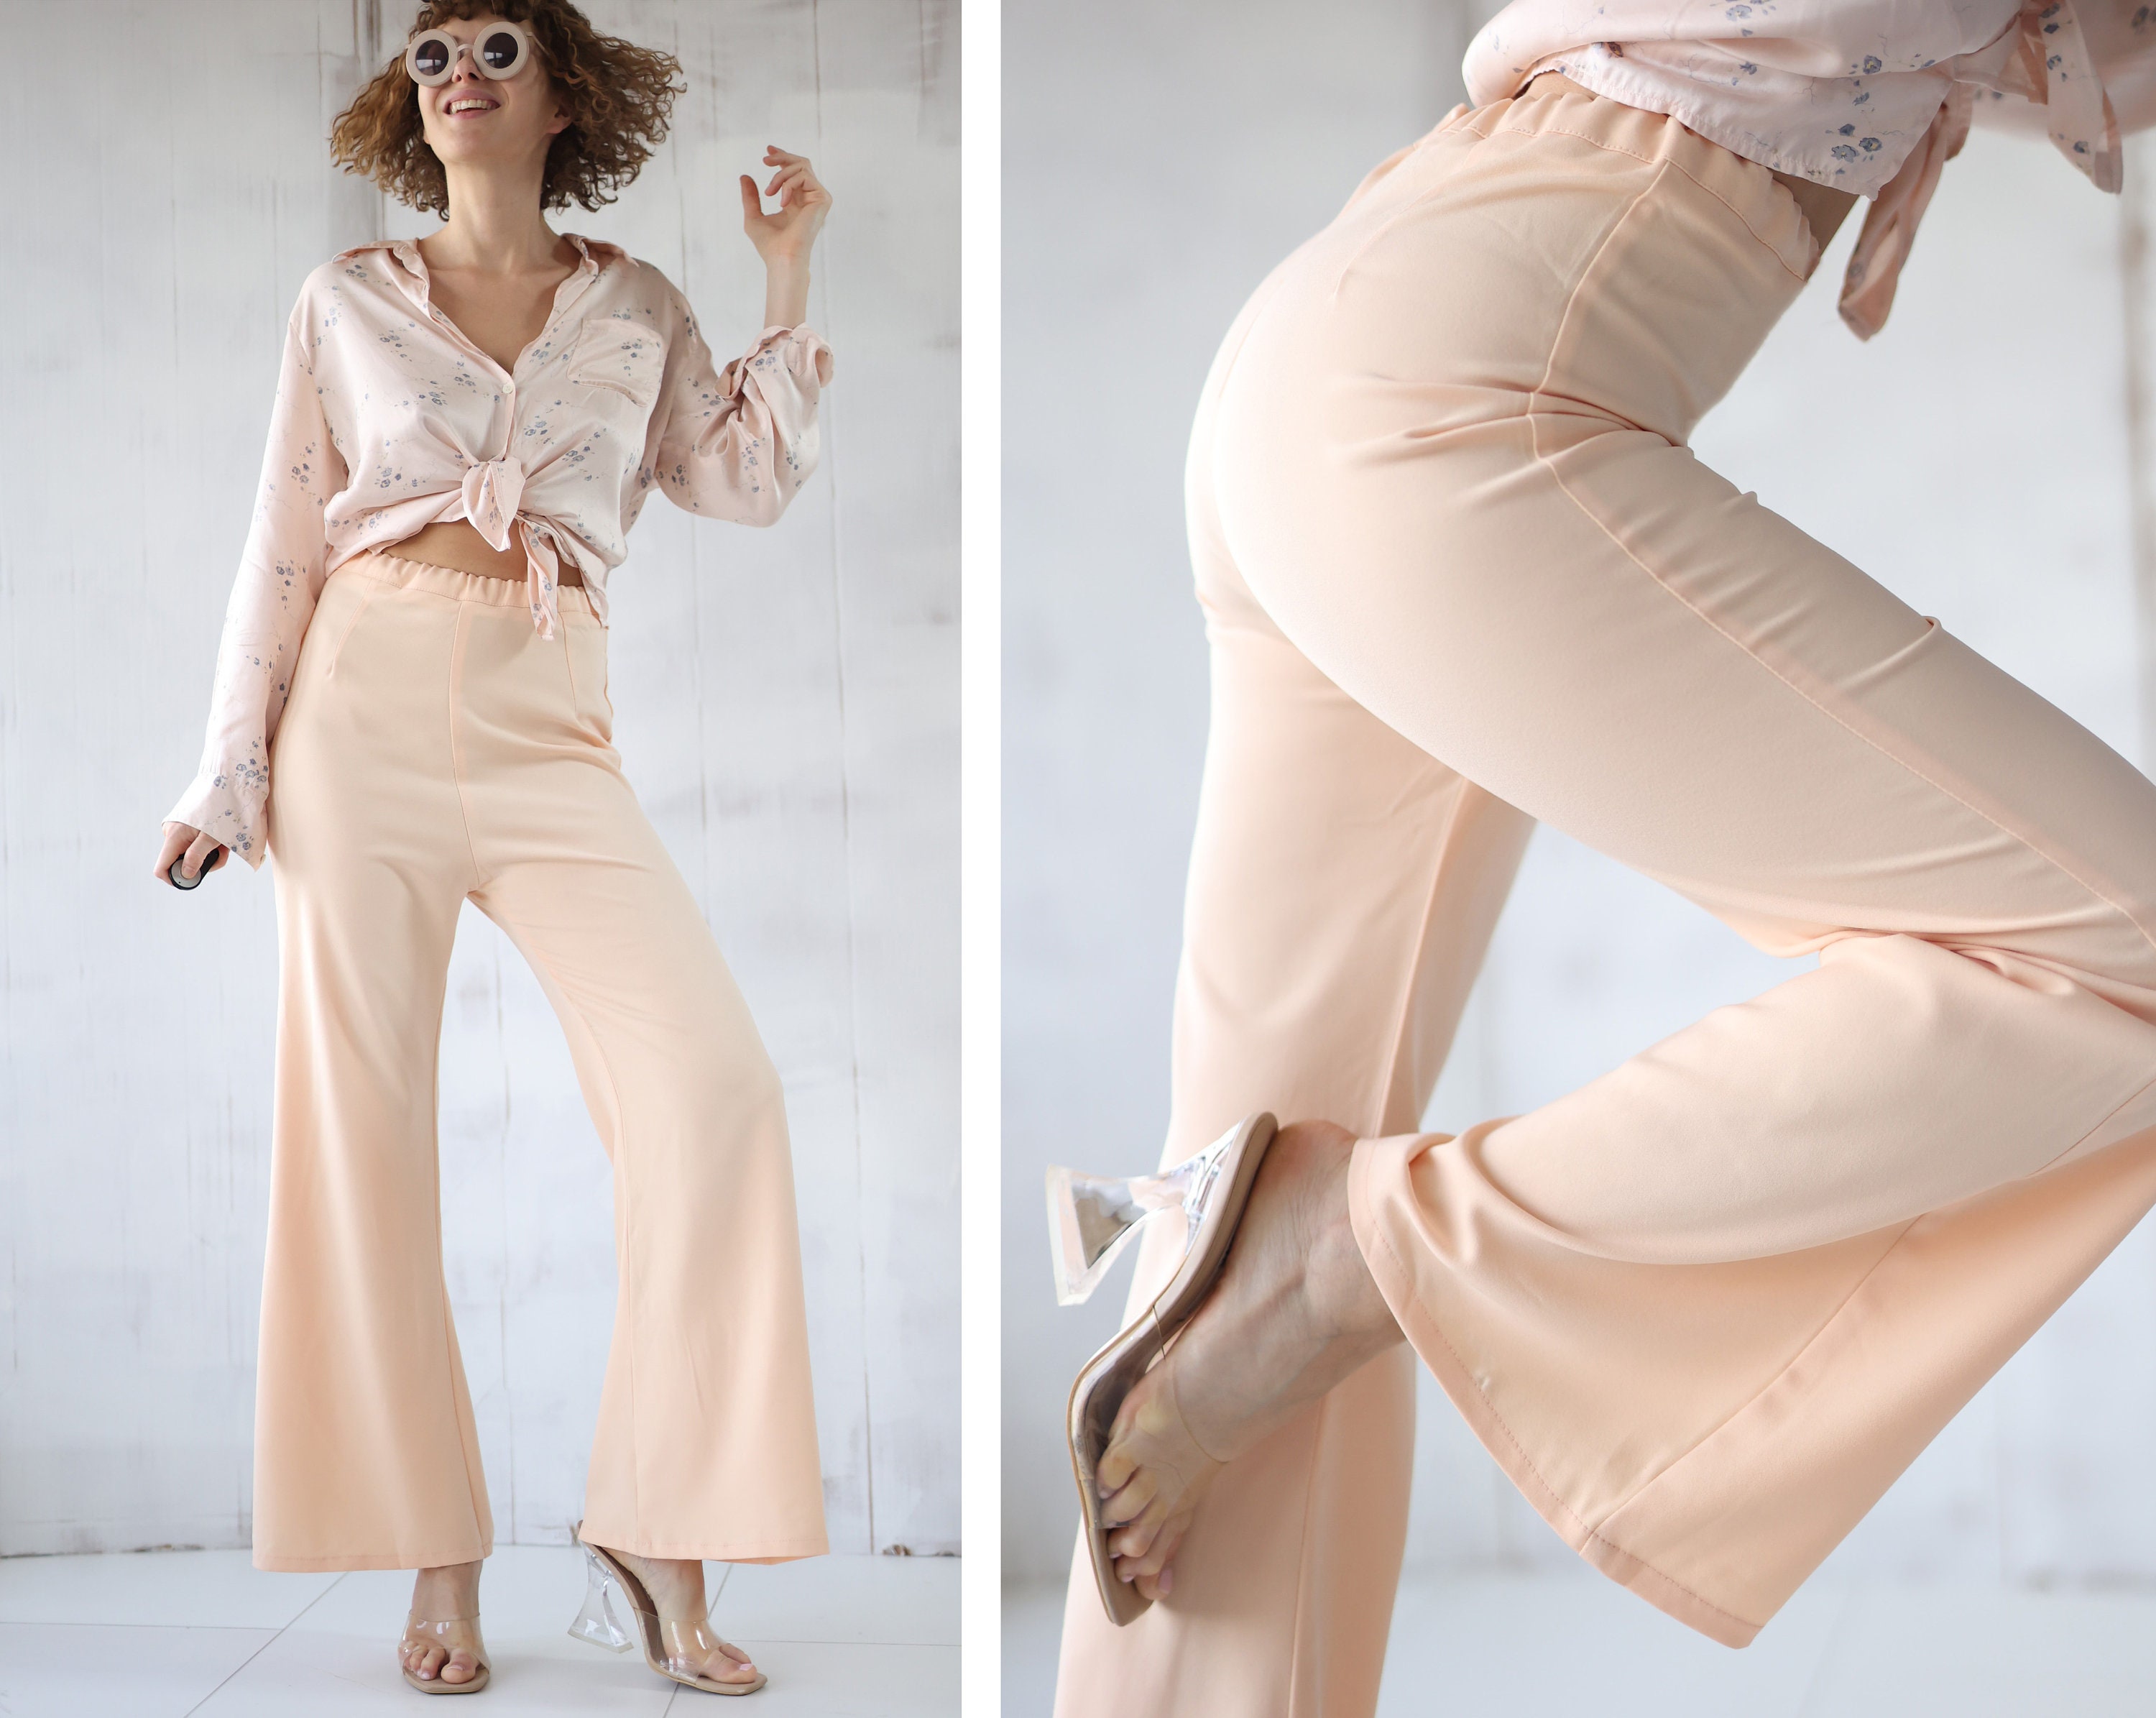 Pantalones de Vestir tipo Leggings de Tiro Alto y Cuadros – Peach